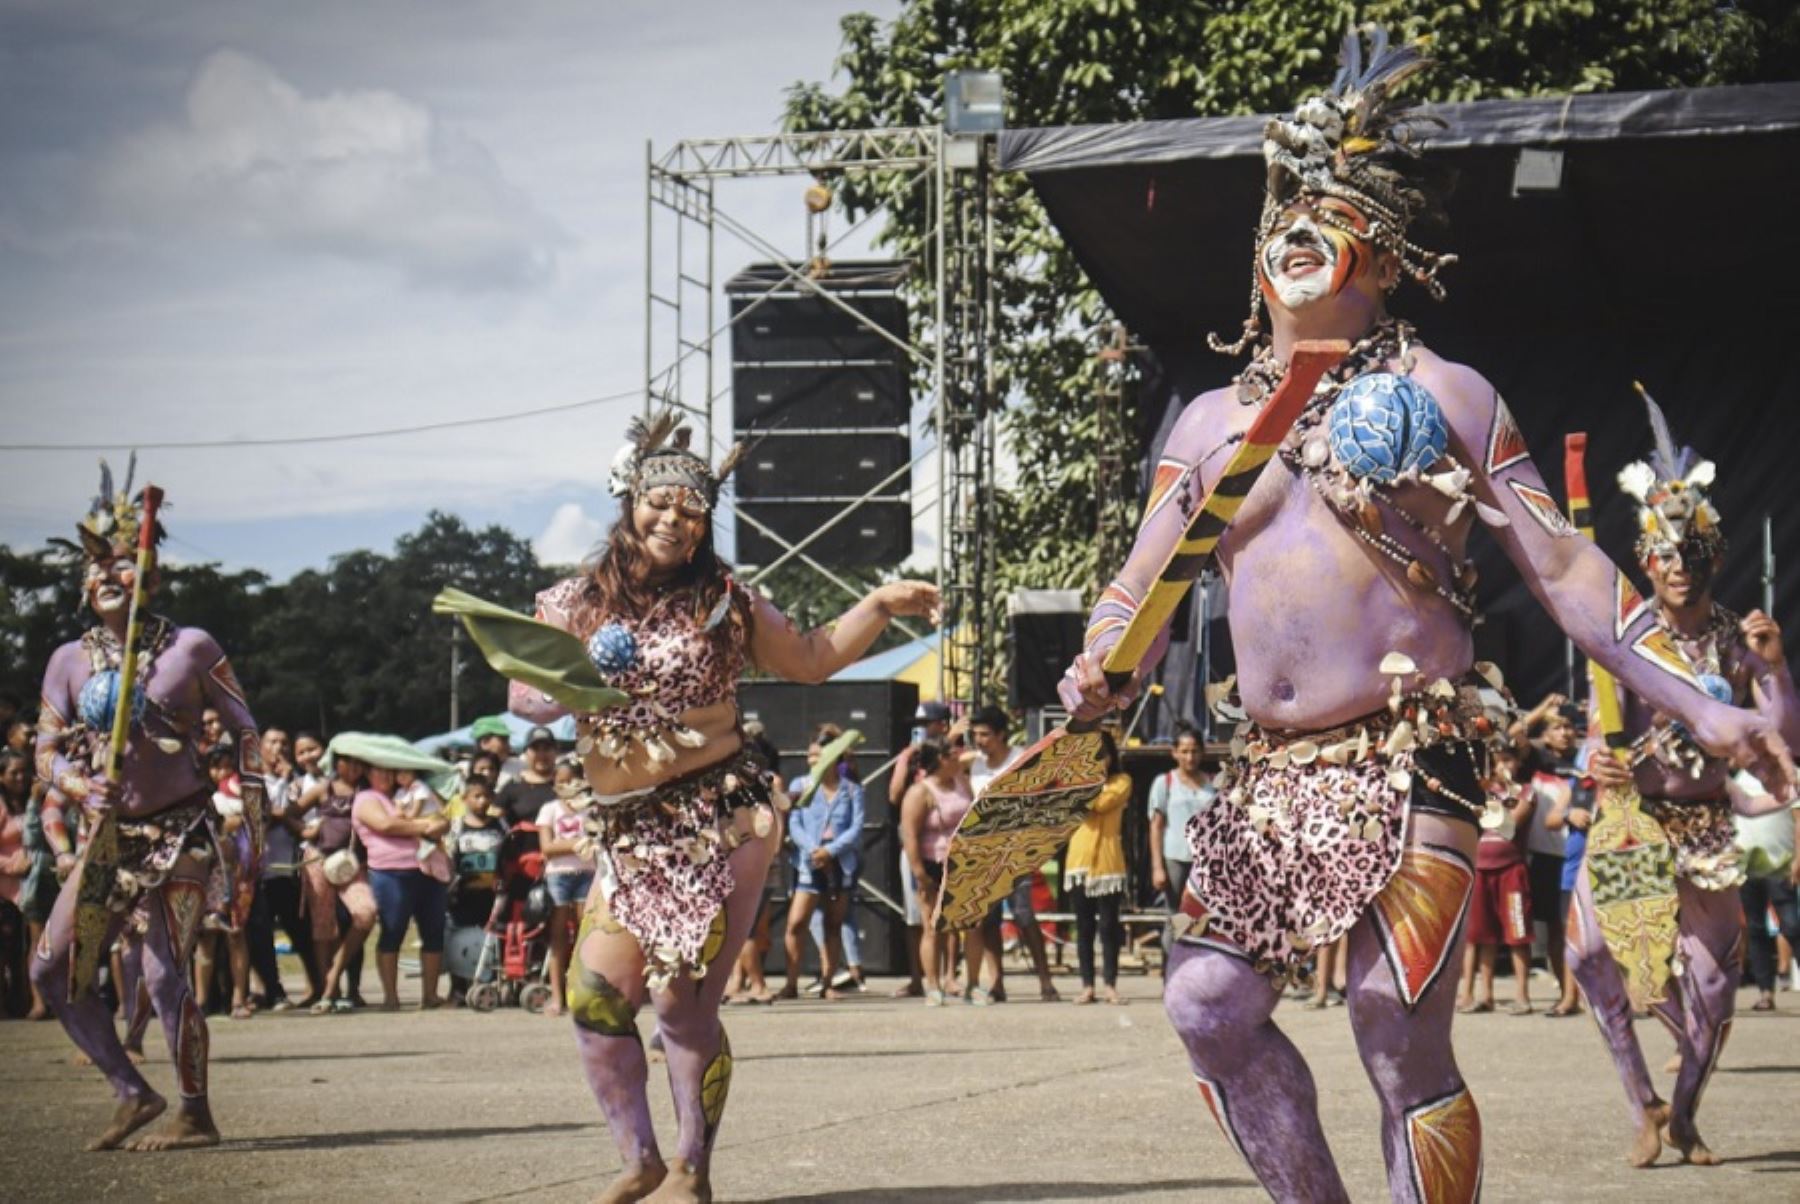 El XXXII Festival Carnaval Ucayali 2023 destaca sobremanera en el calendario festivo peruano porque la identidad regional se expresa más que nunca con alborozo, colorido, música, bailes y trajes típicos, a los que añade una enorme hospitalidad que seduce a los visitantes.